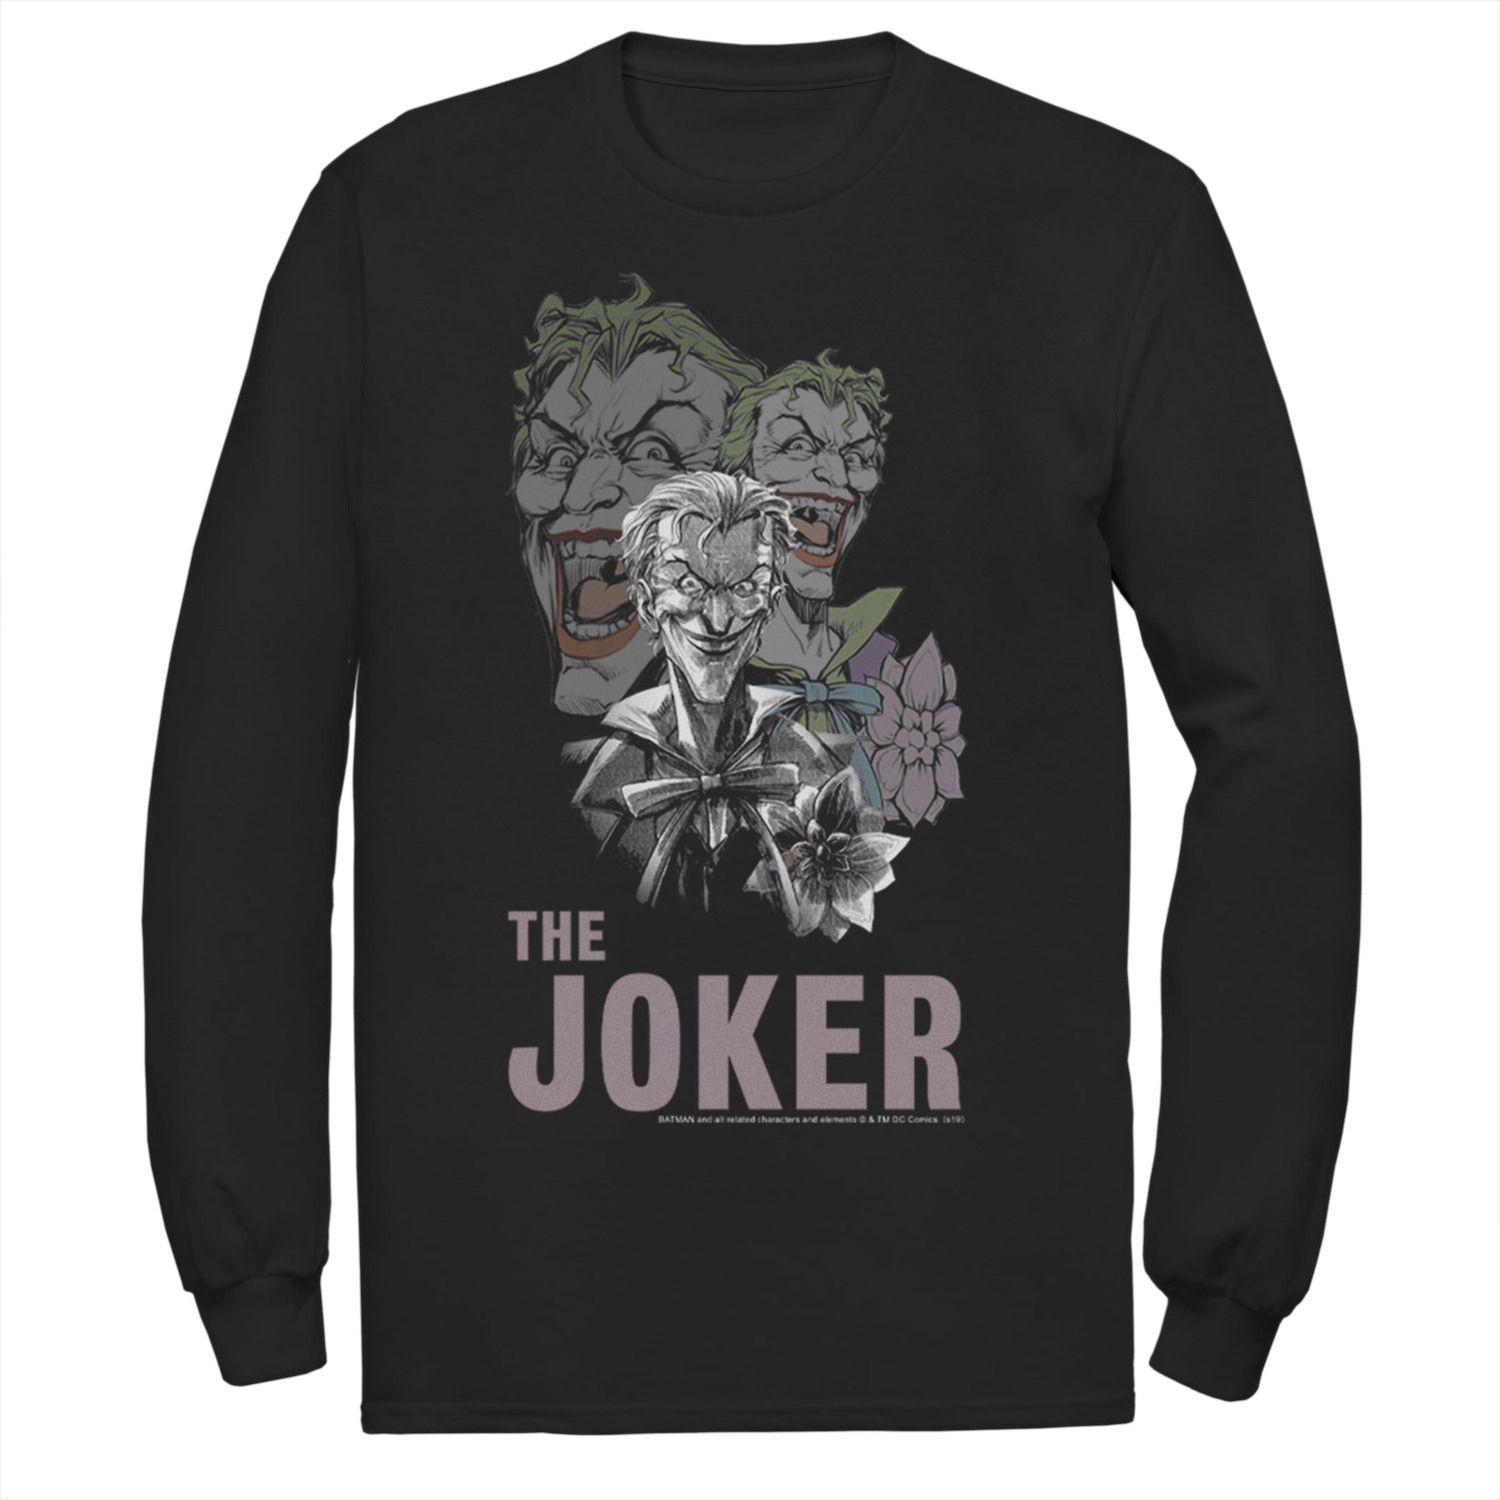 цена Мужская футболка с коллажем DC Comics The Joker